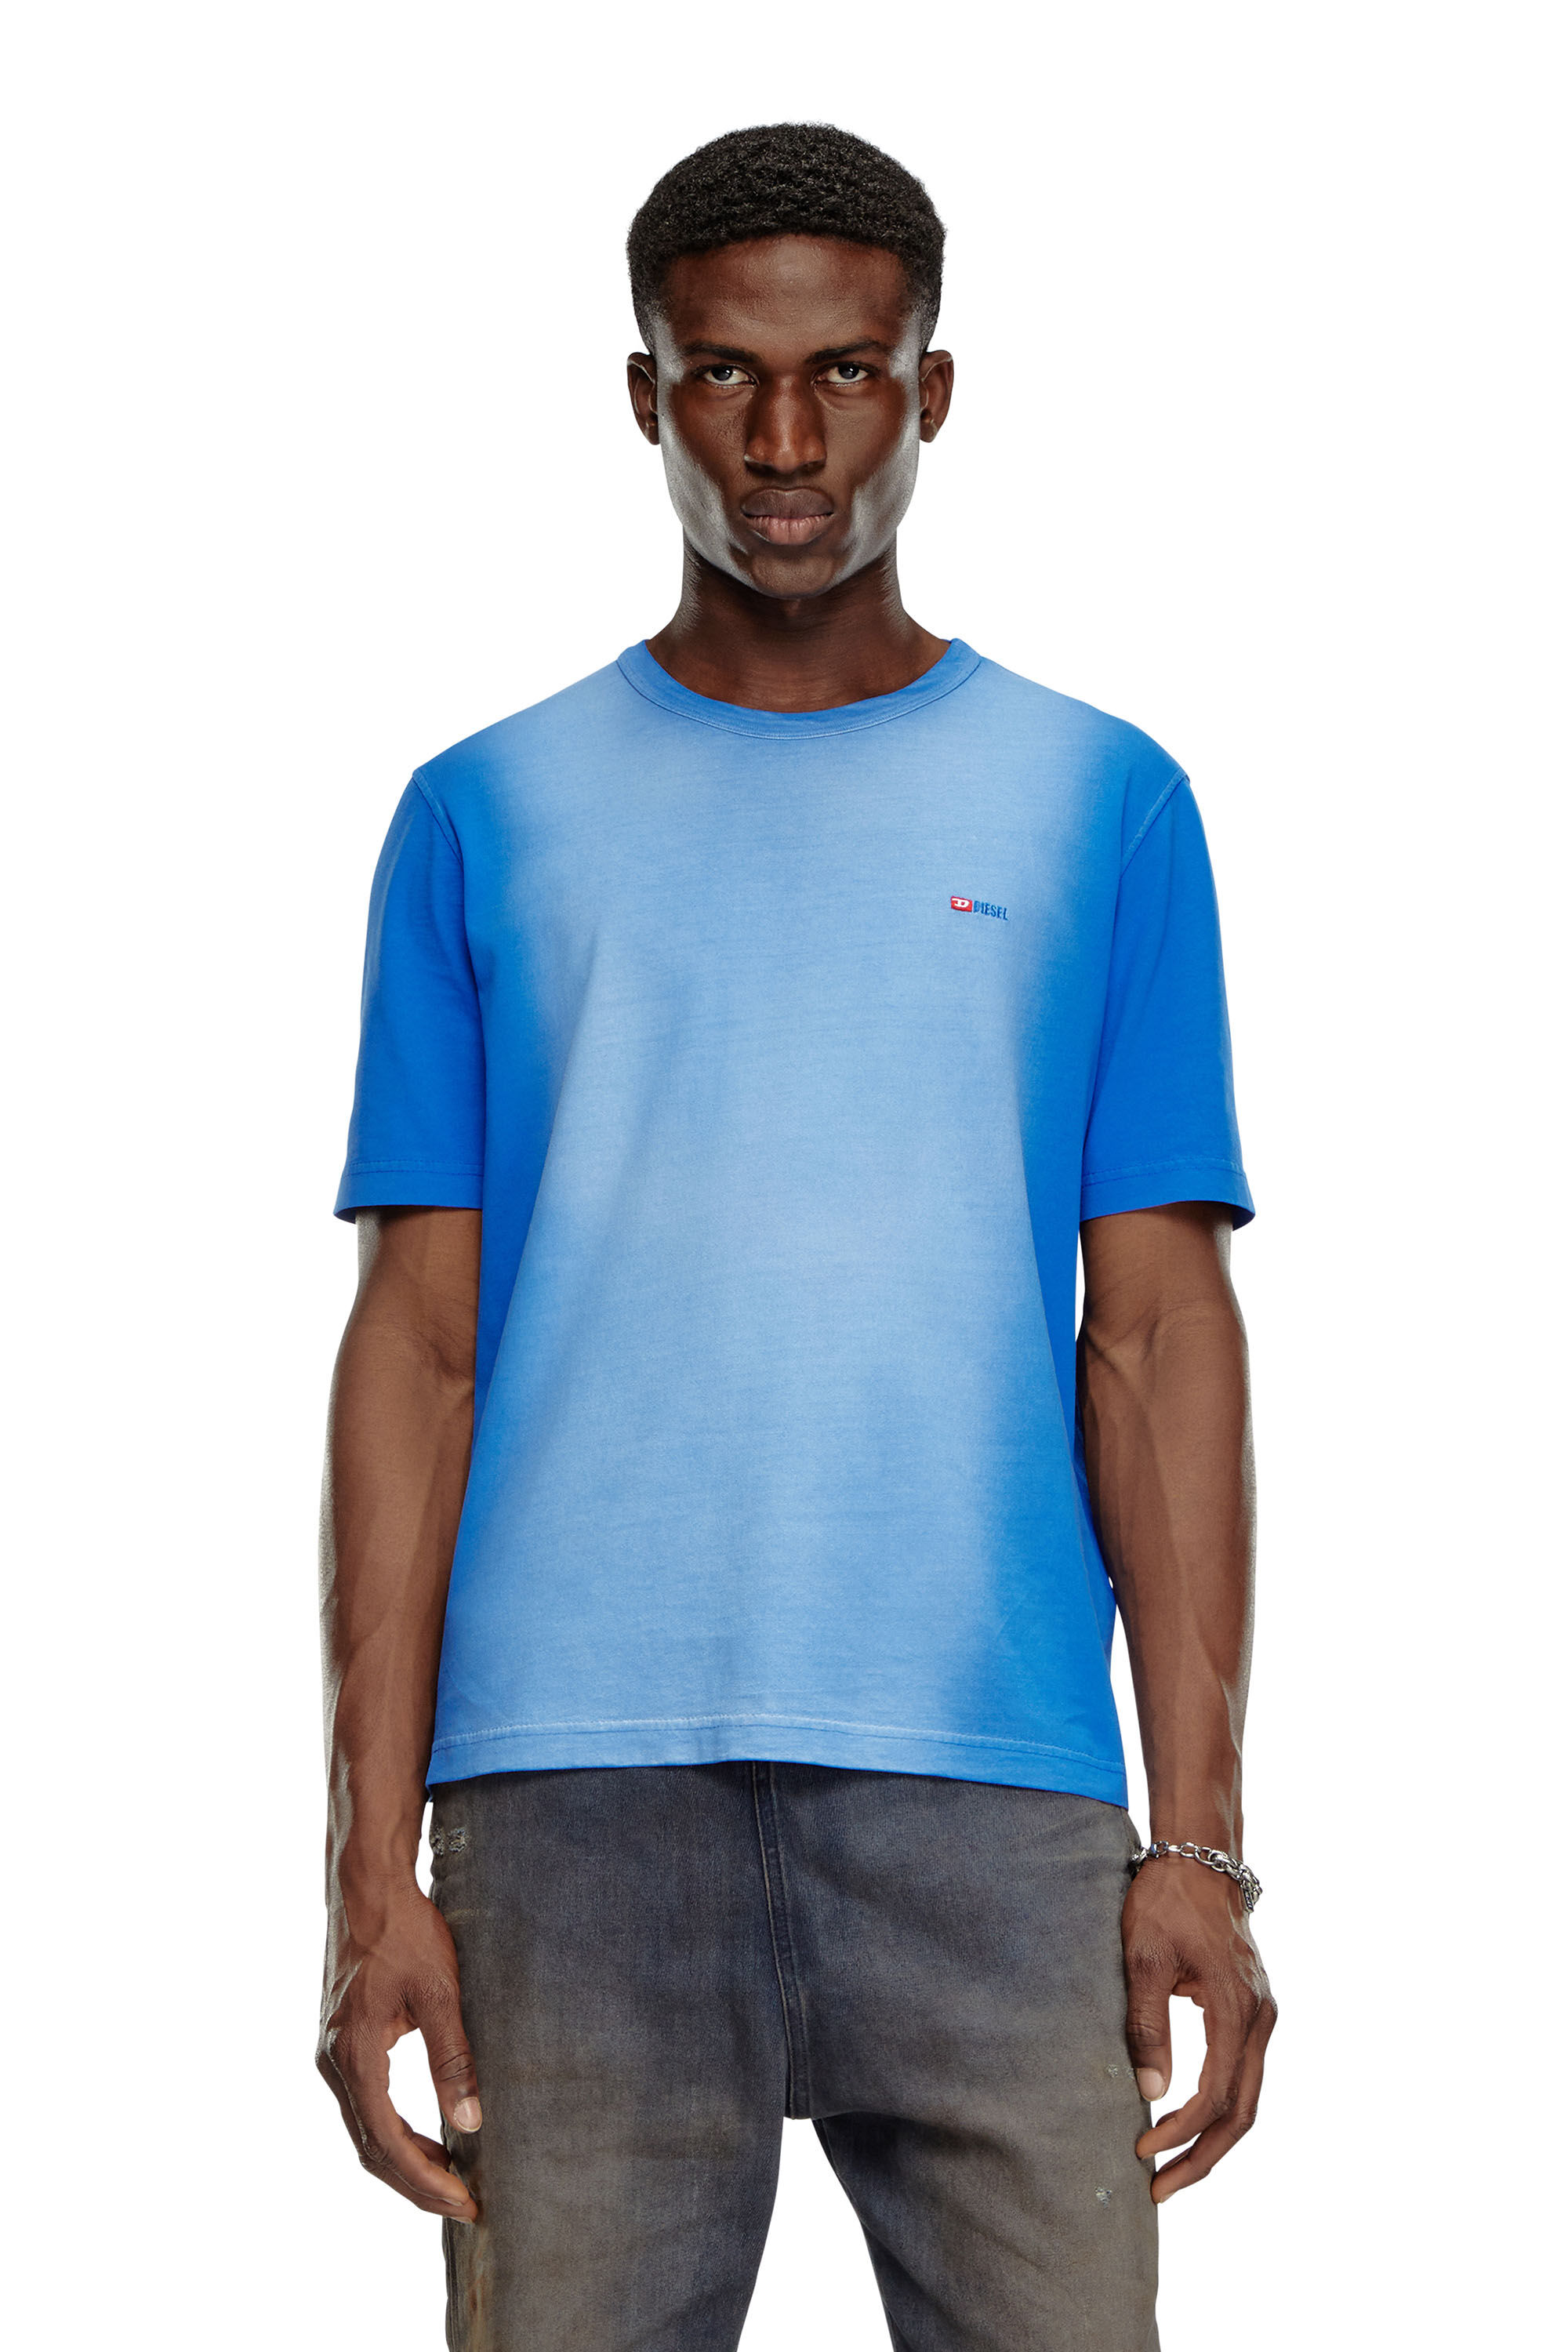 Diesel - T-ADJUST-Q2, Man T-shirt in sprayed cotton jersey in Blue - Image 3